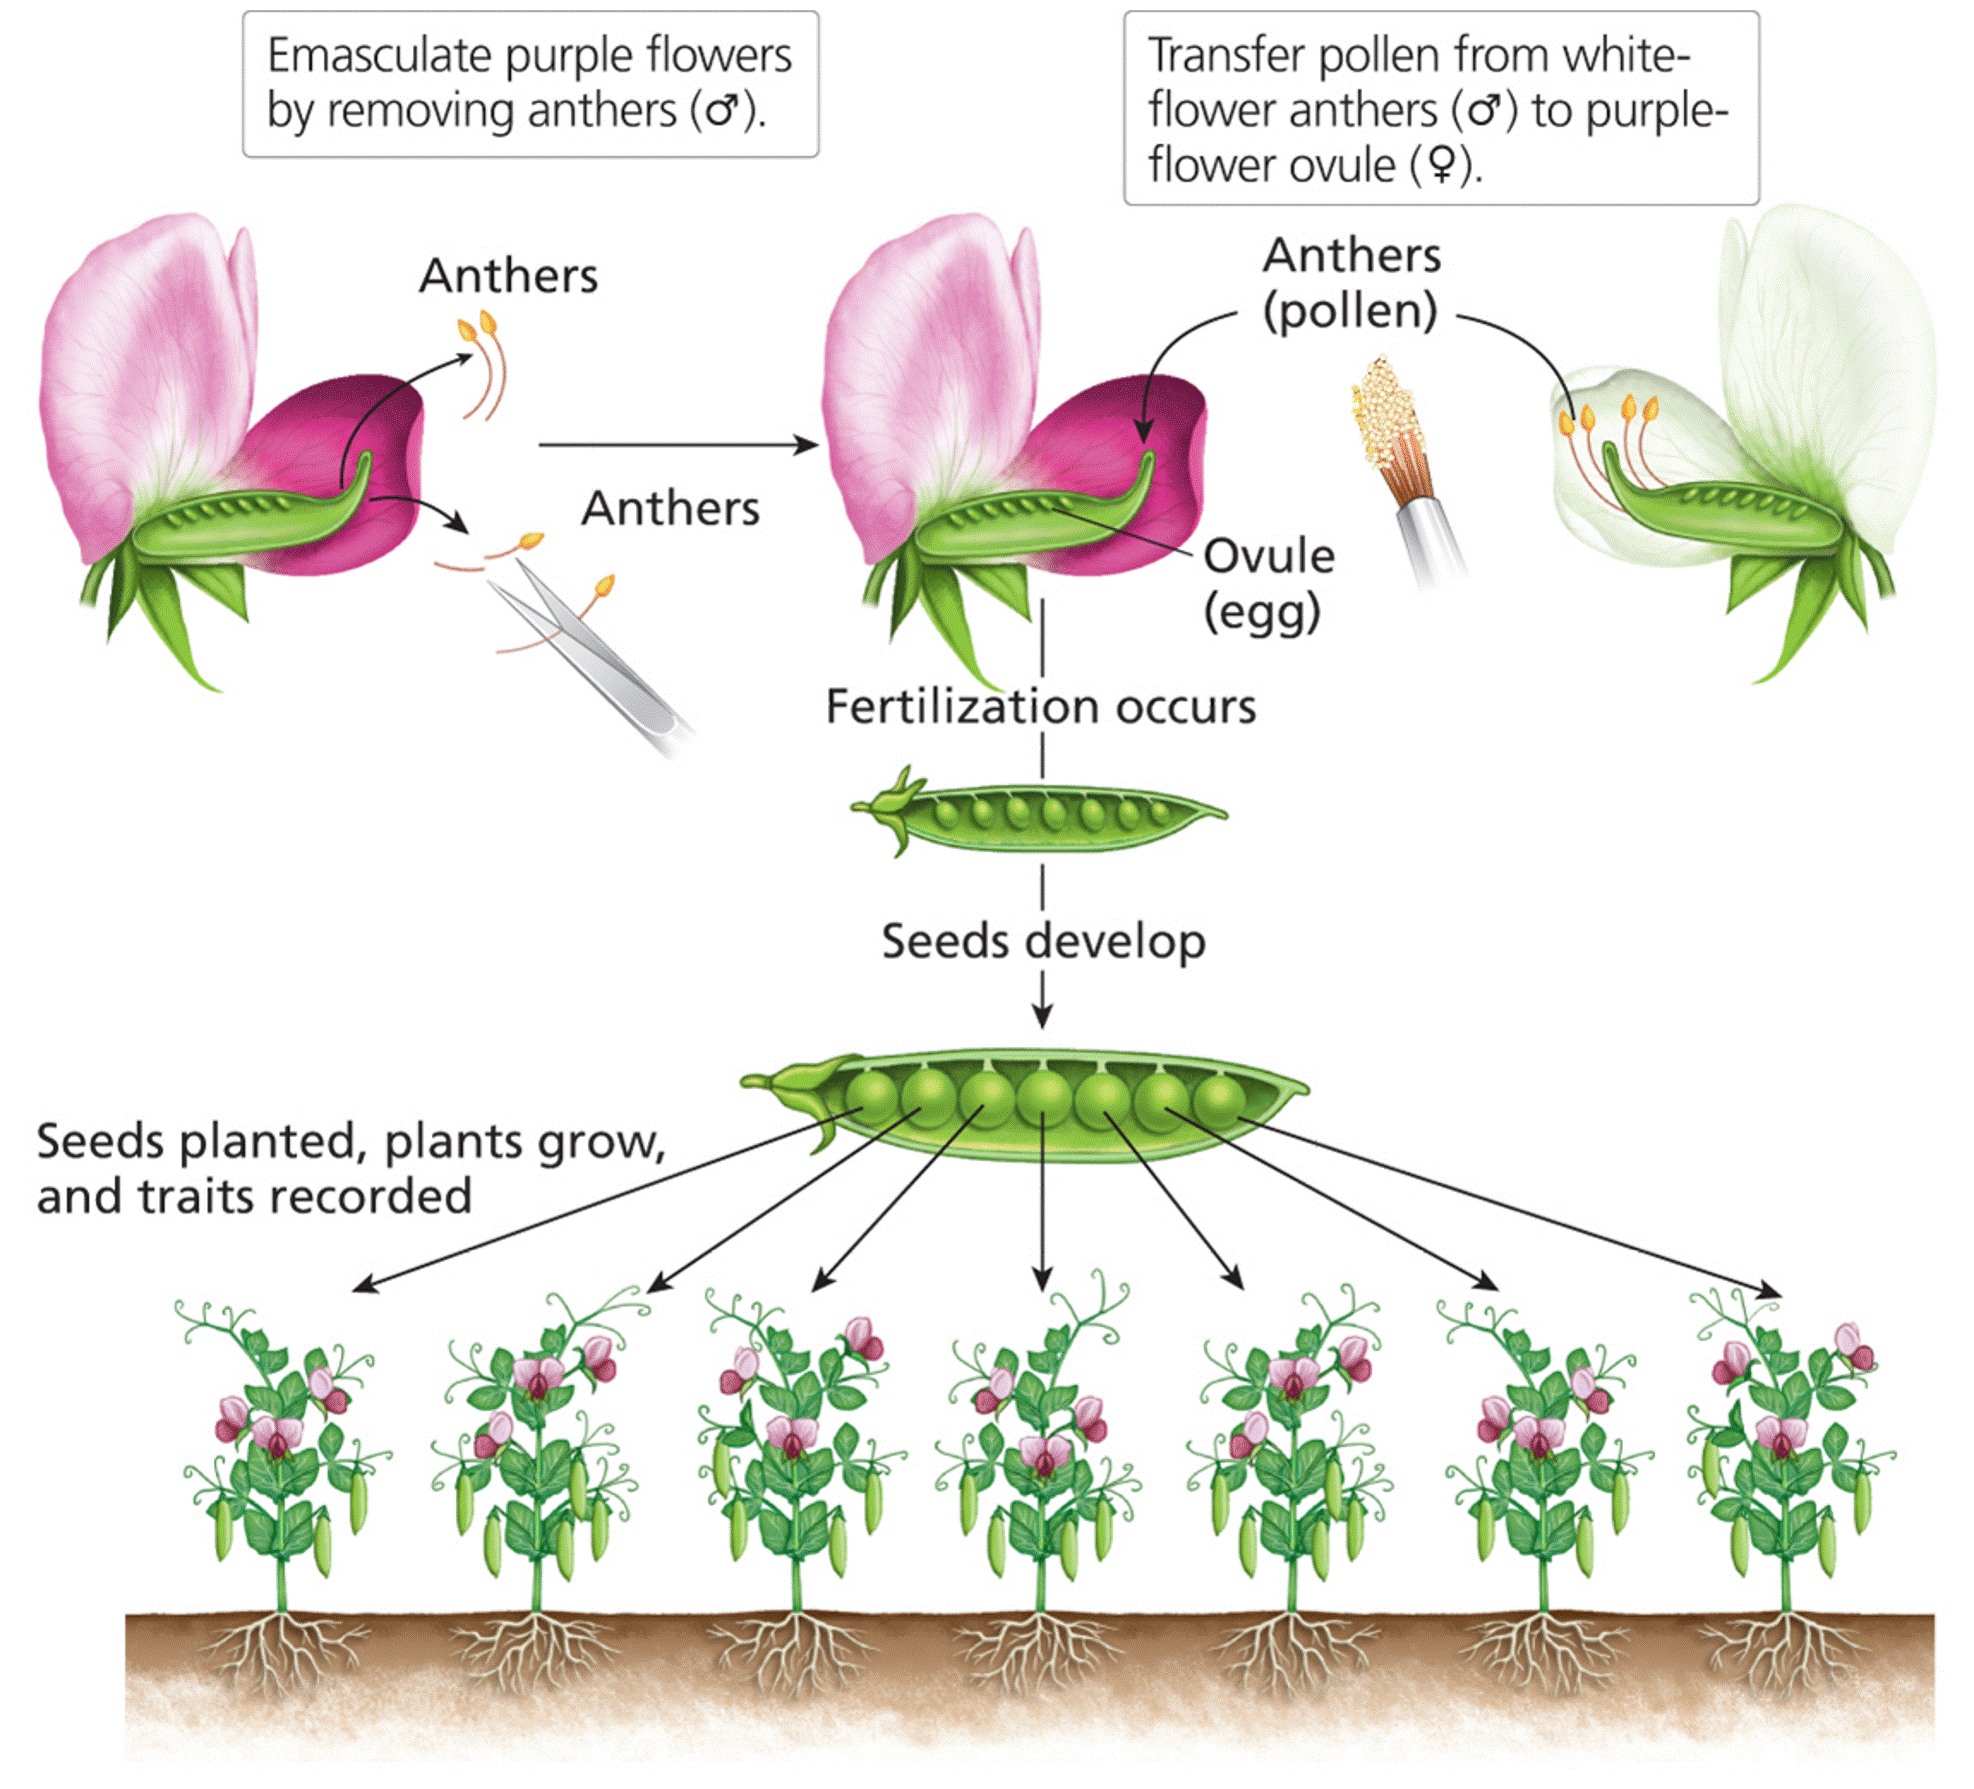 Artificial cross-fertilization of pea plants